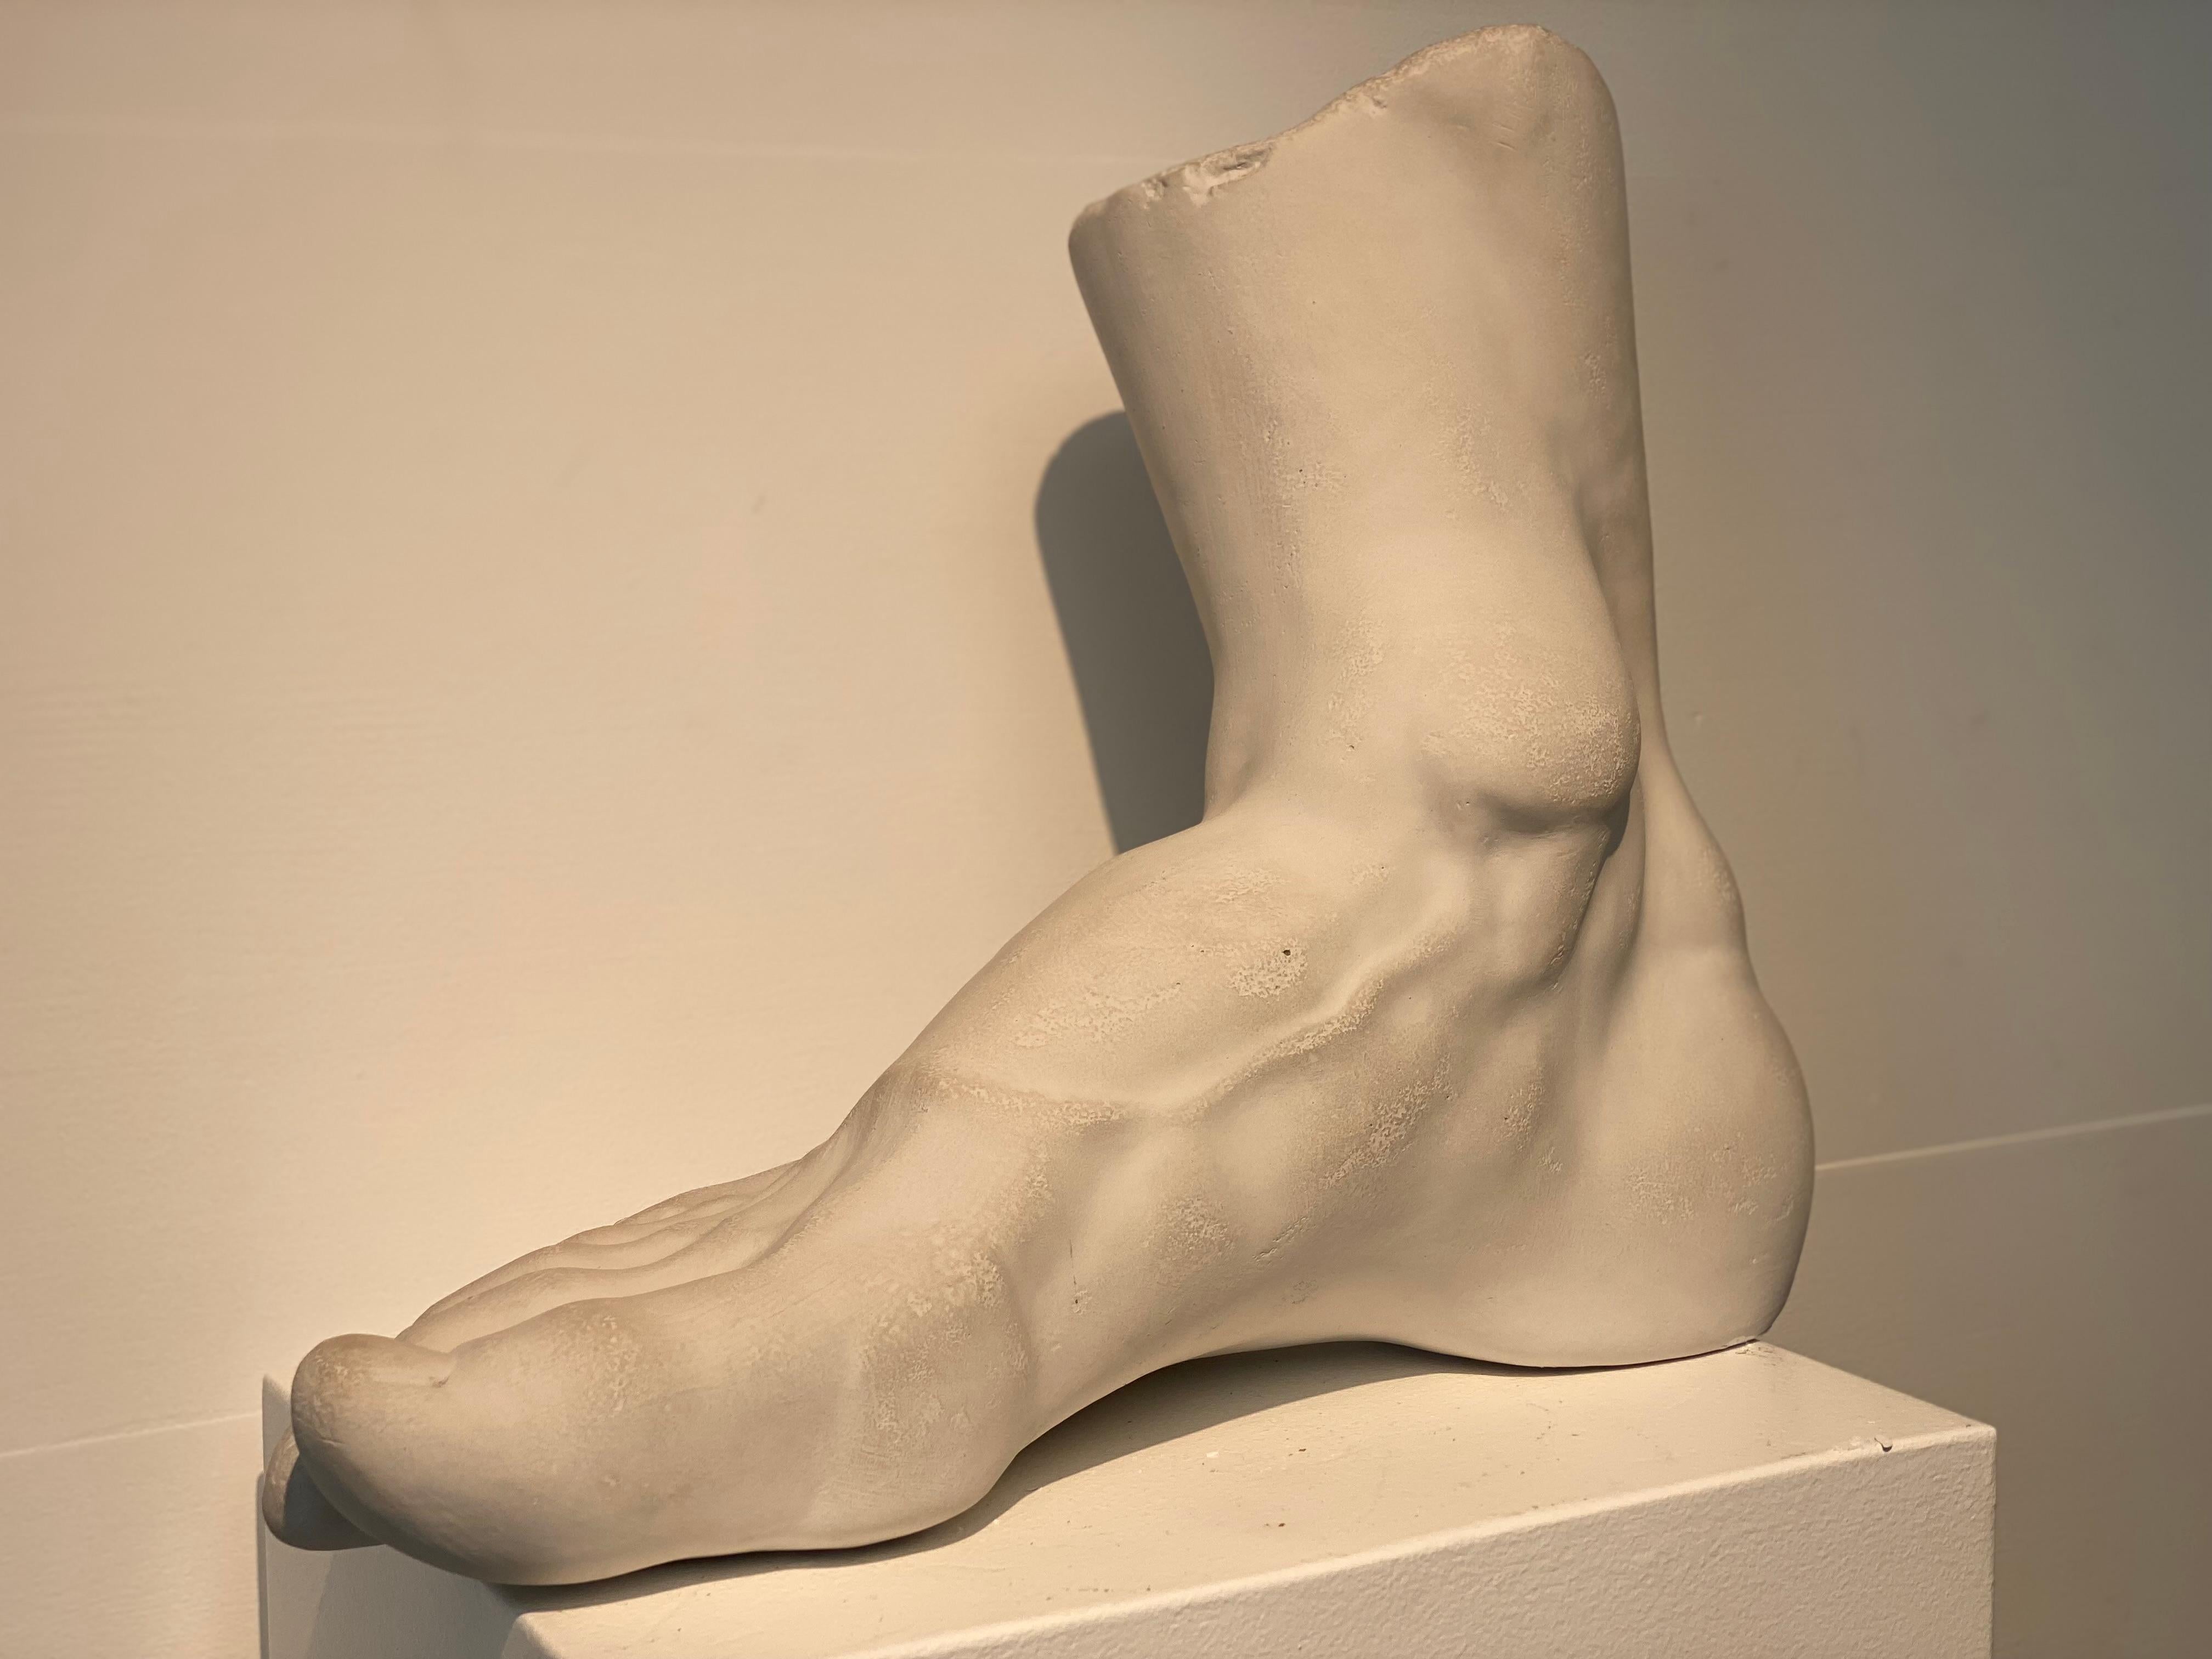 Modèle très décoratif d'un pied humain en plâtre,
Origine italienne,
La patine du plâtre est belle et chaleureuse,
objet très décoratif pouvant être utilisé à différentes fins